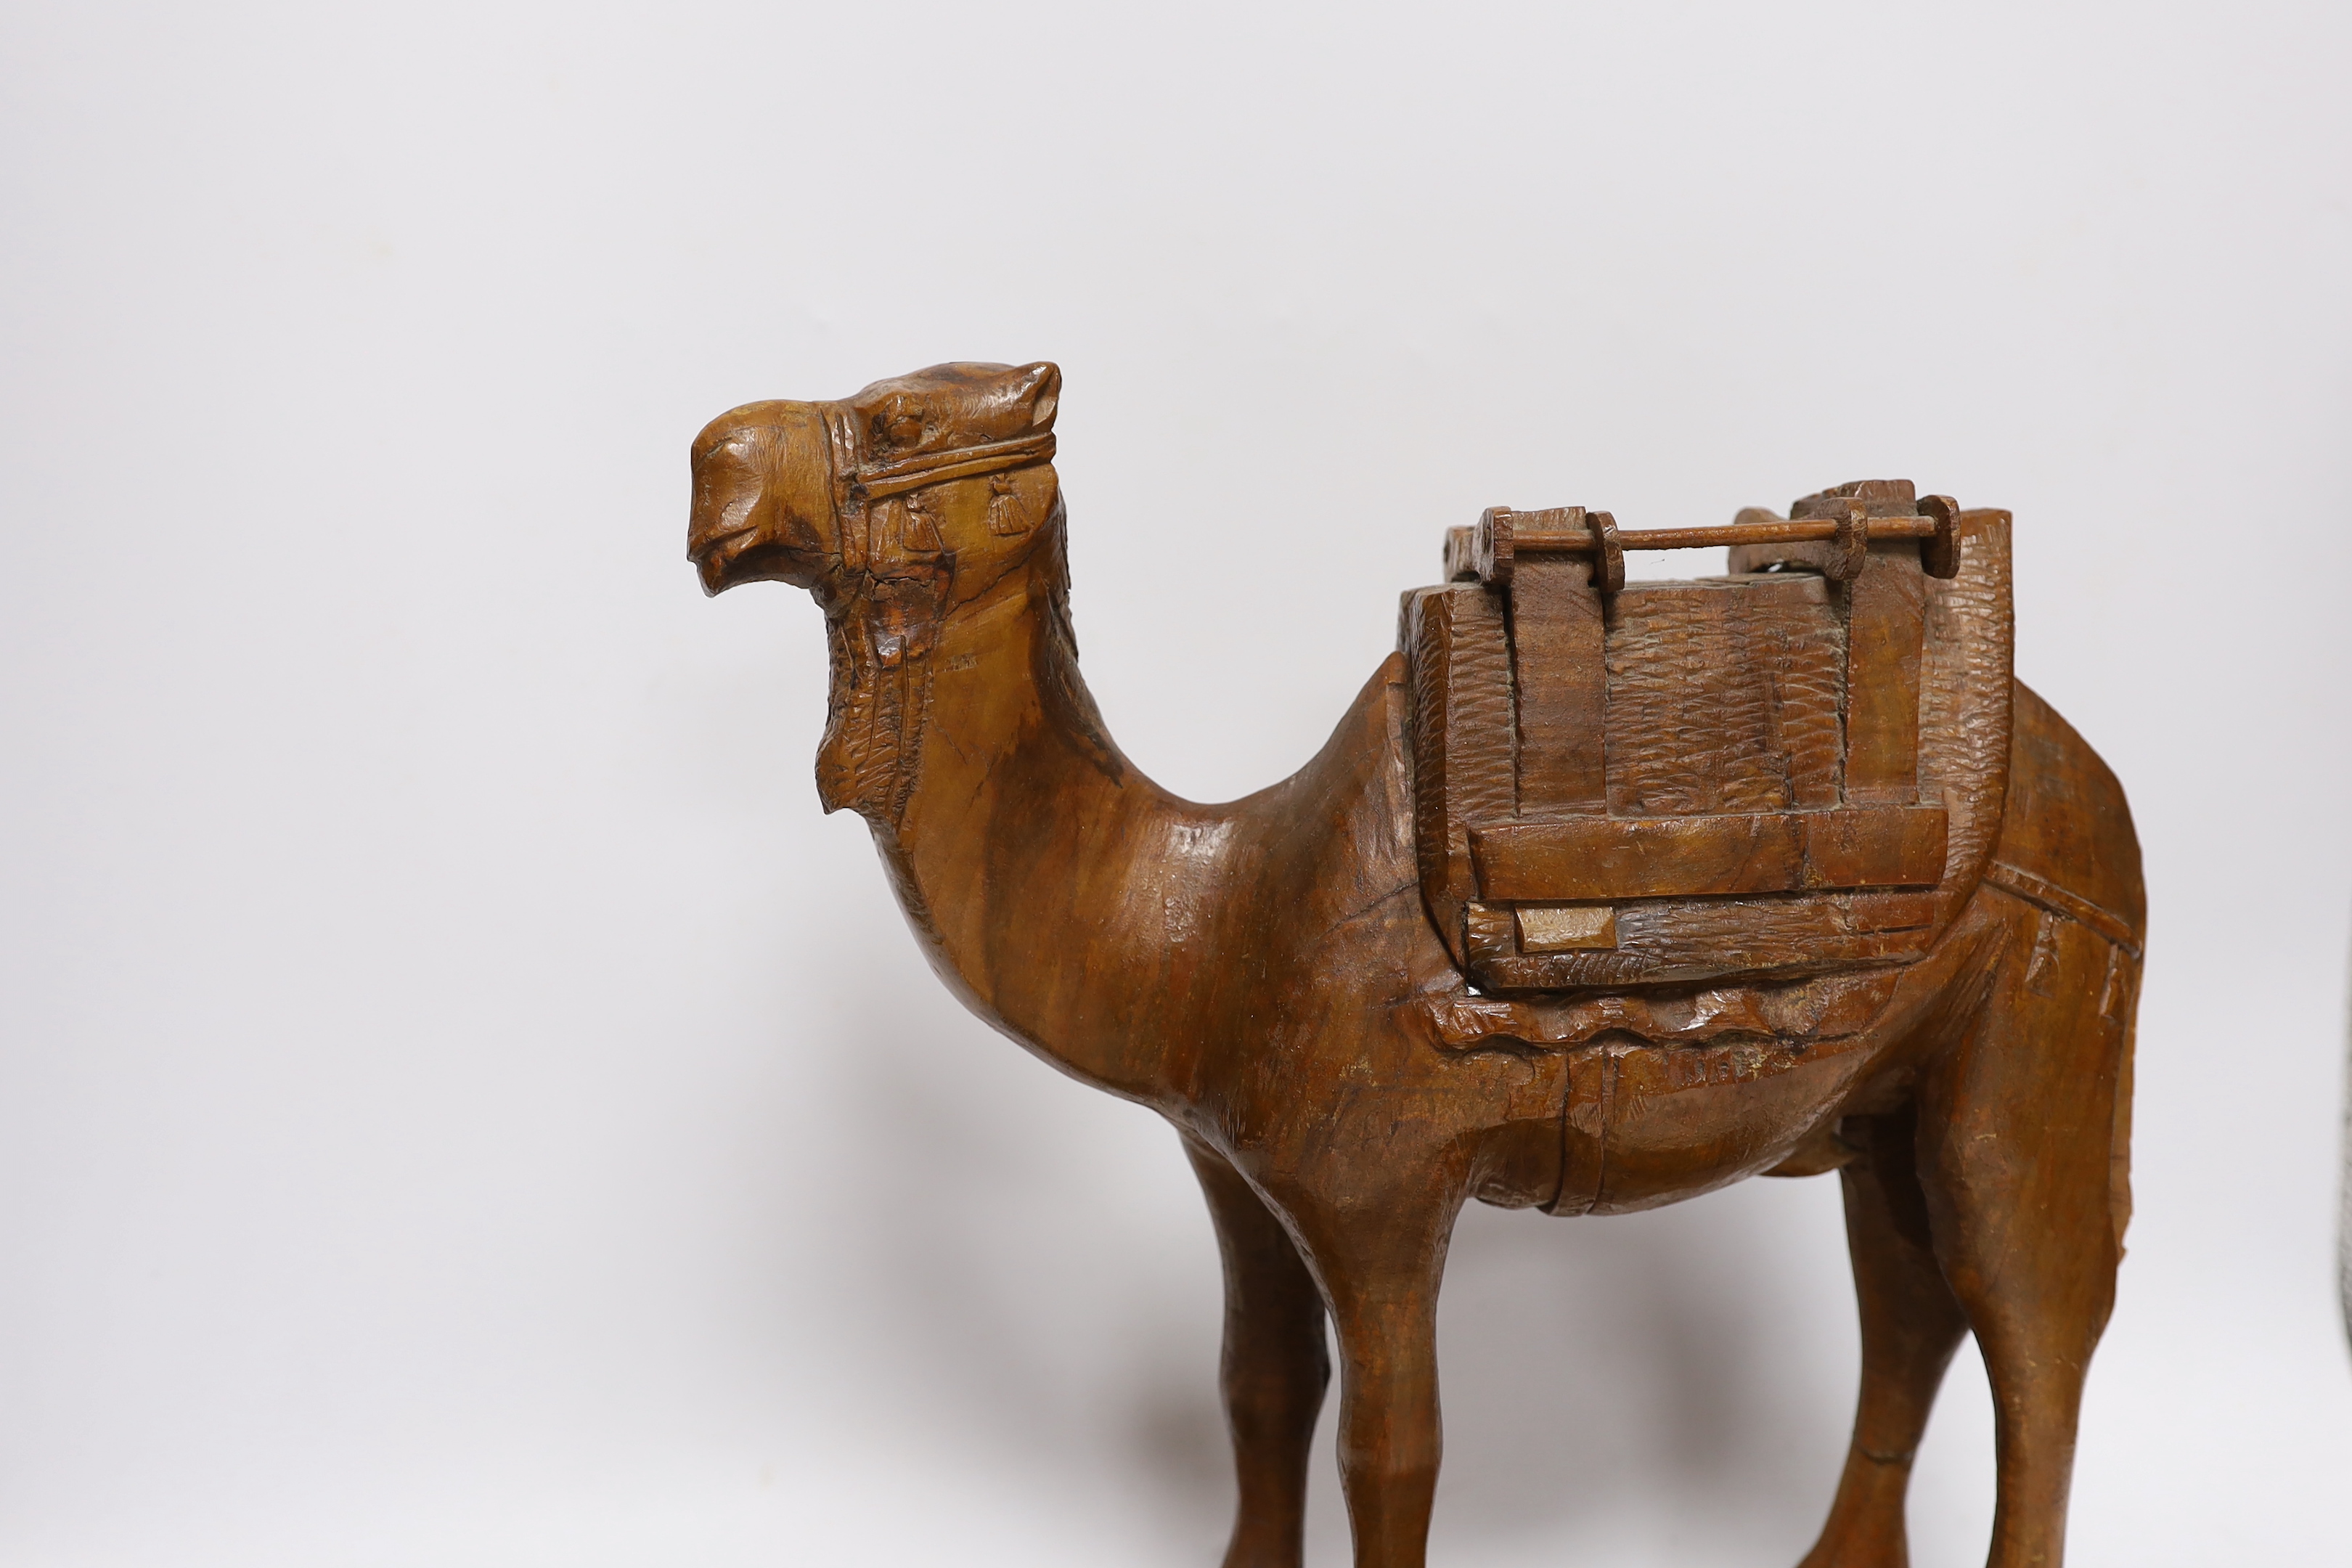 A Jerusalem carved olivewood camel pen / desk ink stand, 34cm wide